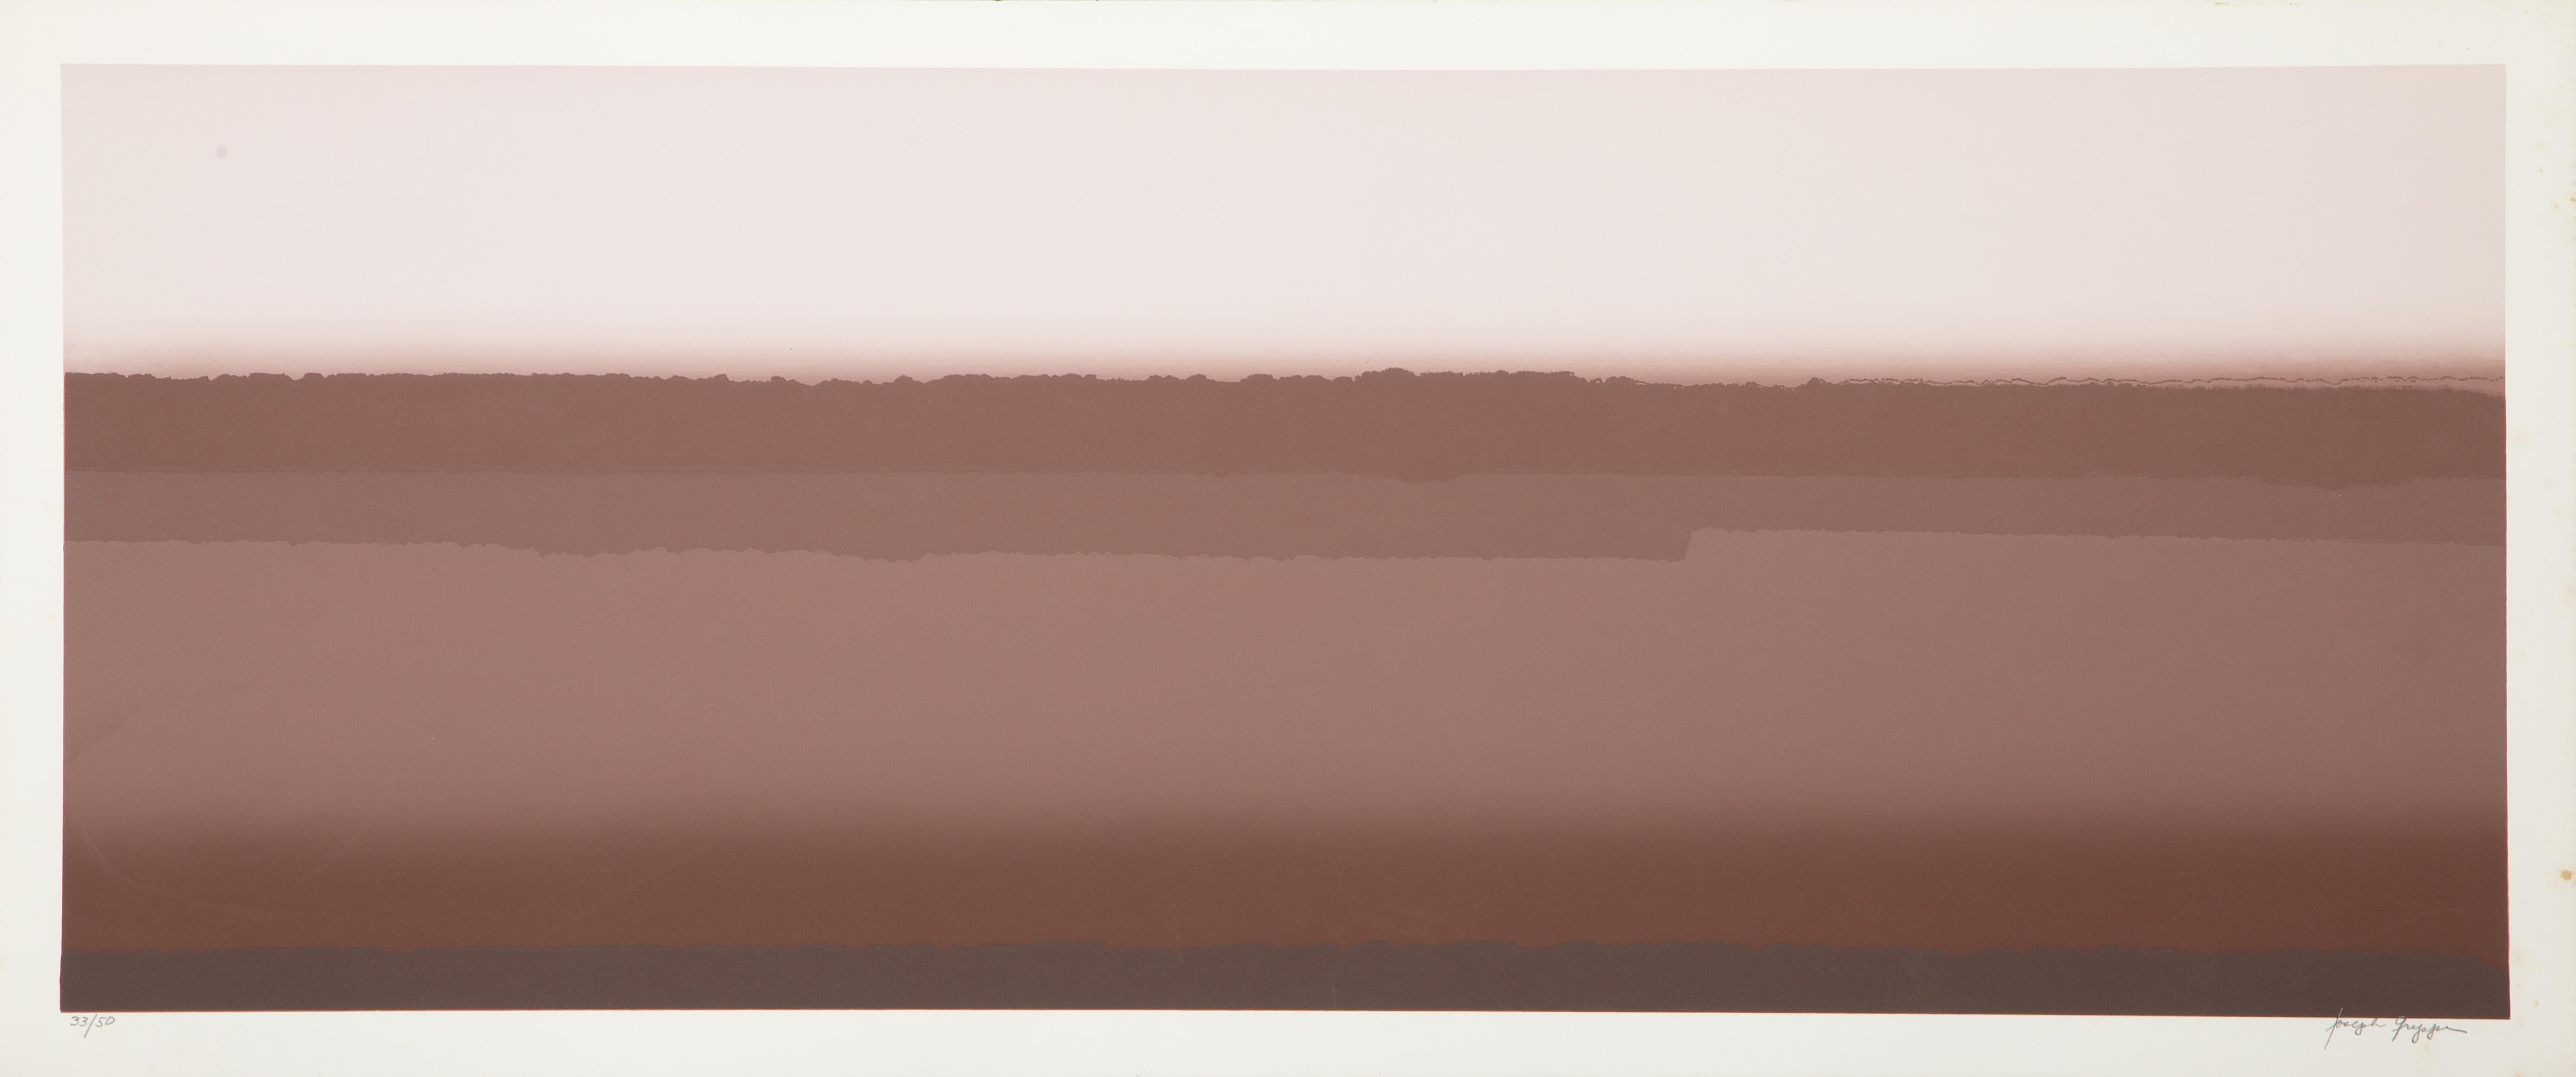 Désert II Variation
Joseph Grippi, Américain (1924-2001)
Sérigraphie, signée et numérotée au crayon.
Edition de 33/50
Taille de l'image : 14 x 36.25 pouces
Taille : 16 x 38.25 in. (40.64 x 97.16 cm)